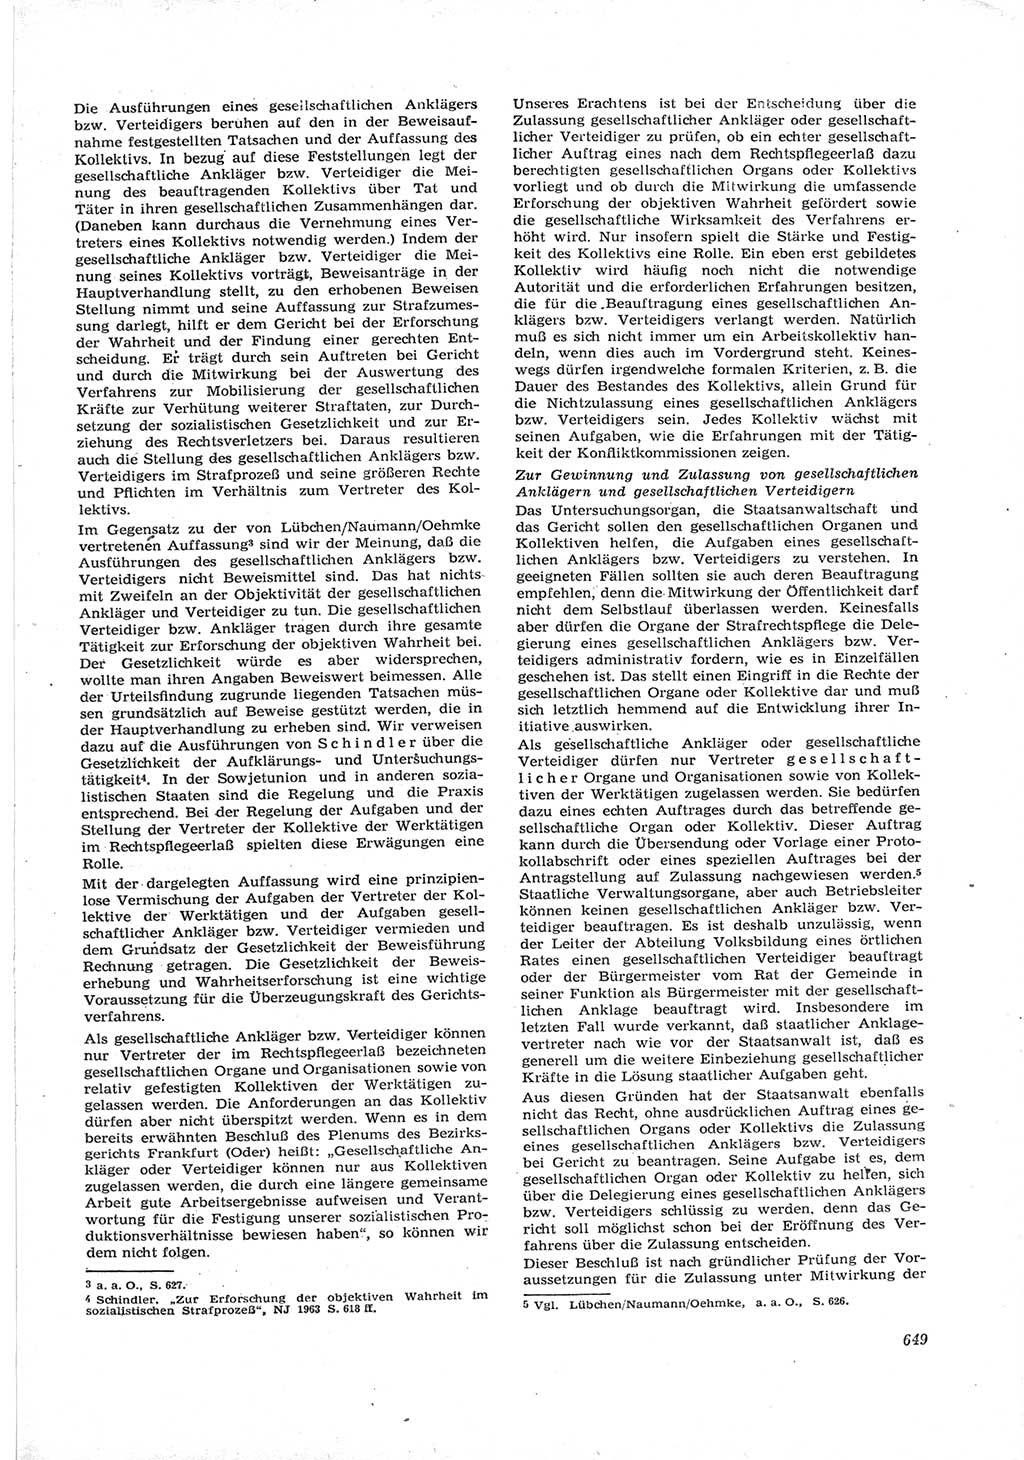 Neue Justiz (NJ), Zeitschrift für Recht und Rechtswissenschaft [Deutsche Demokratische Republik (DDR)], 17. Jahrgang 1963, Seite 649 (NJ DDR 1963, S. 649)